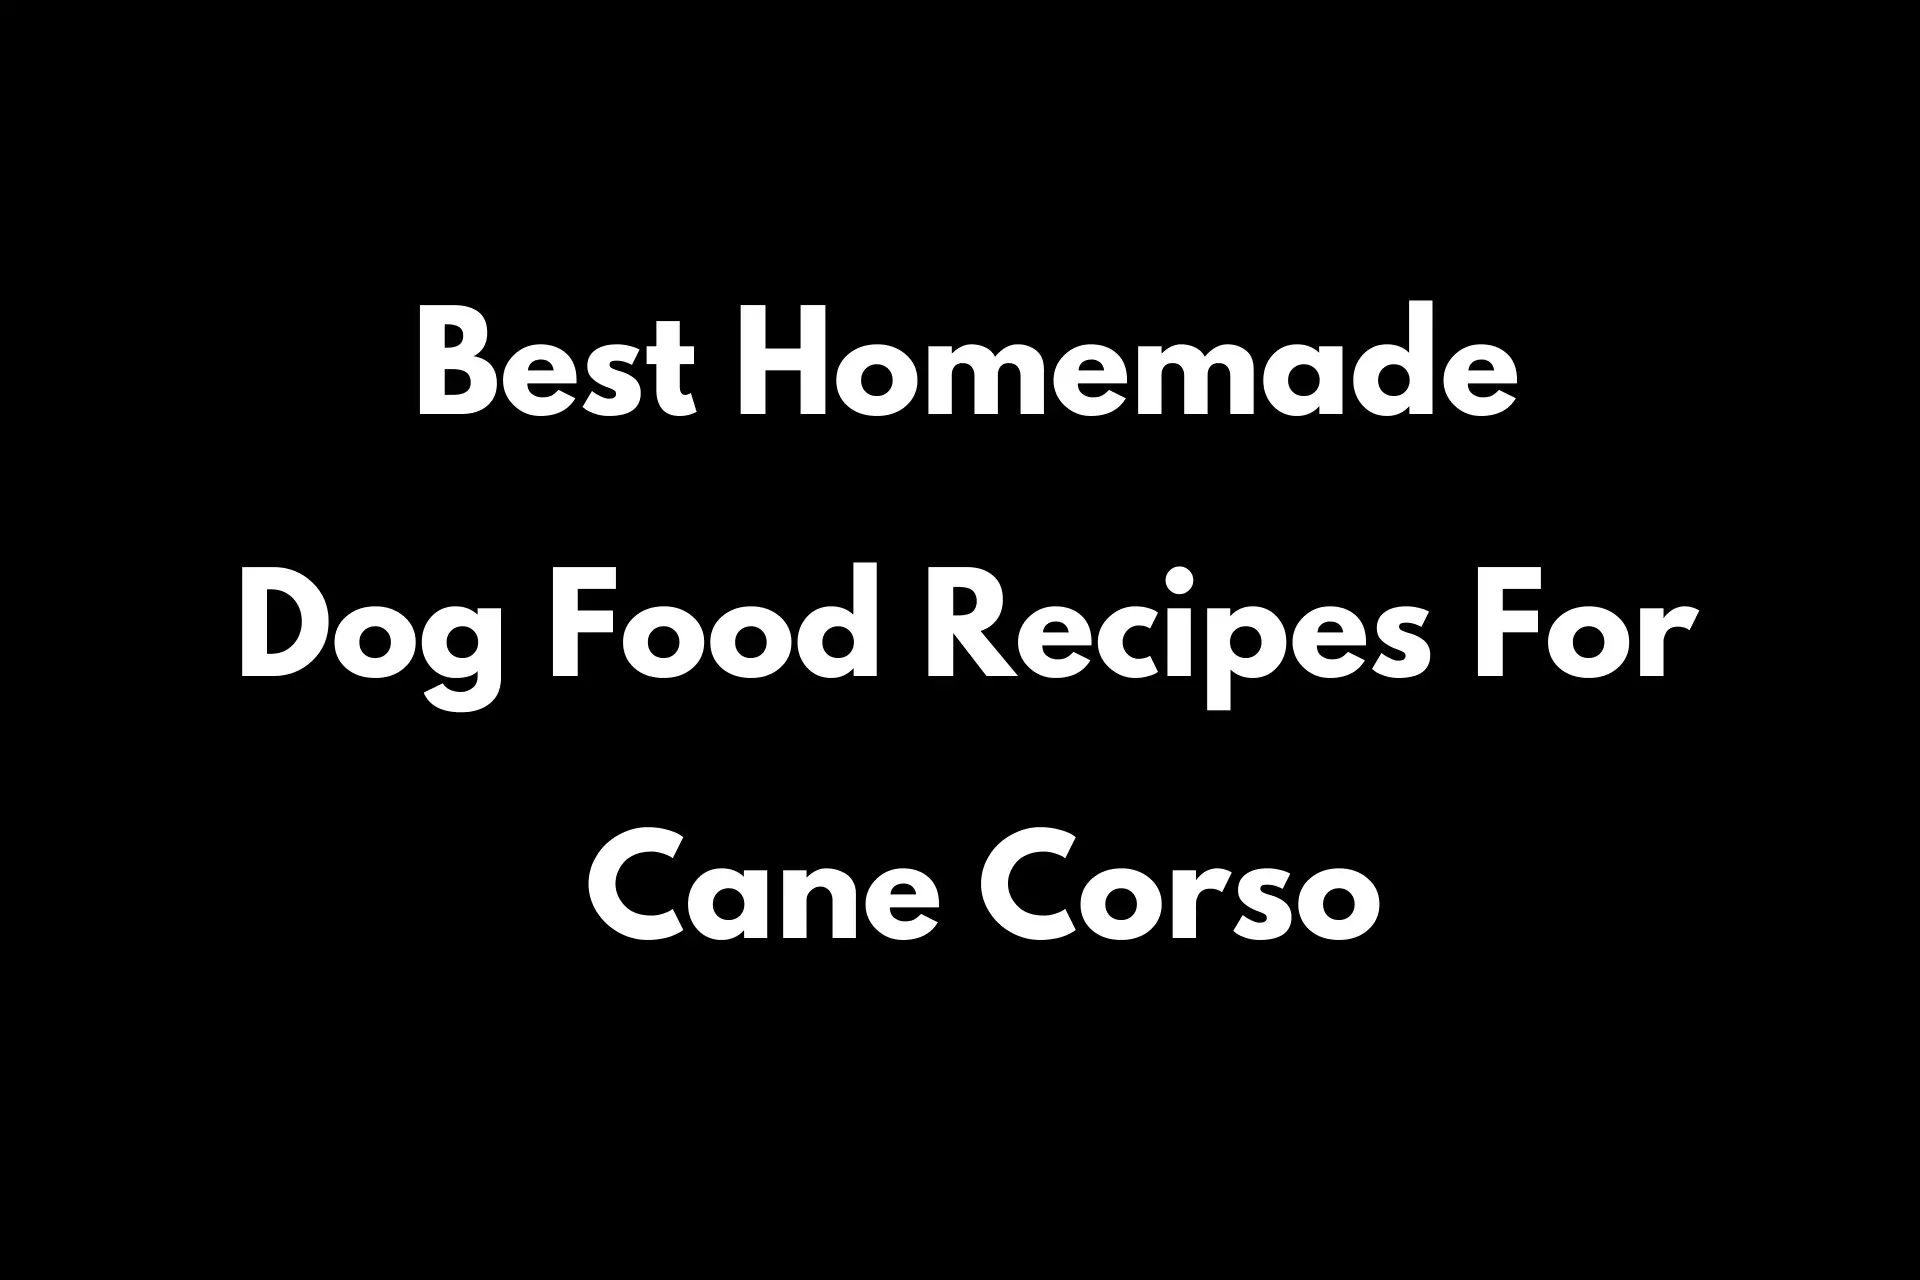 Best Homemade Dog Food Recipes For Cane Corso